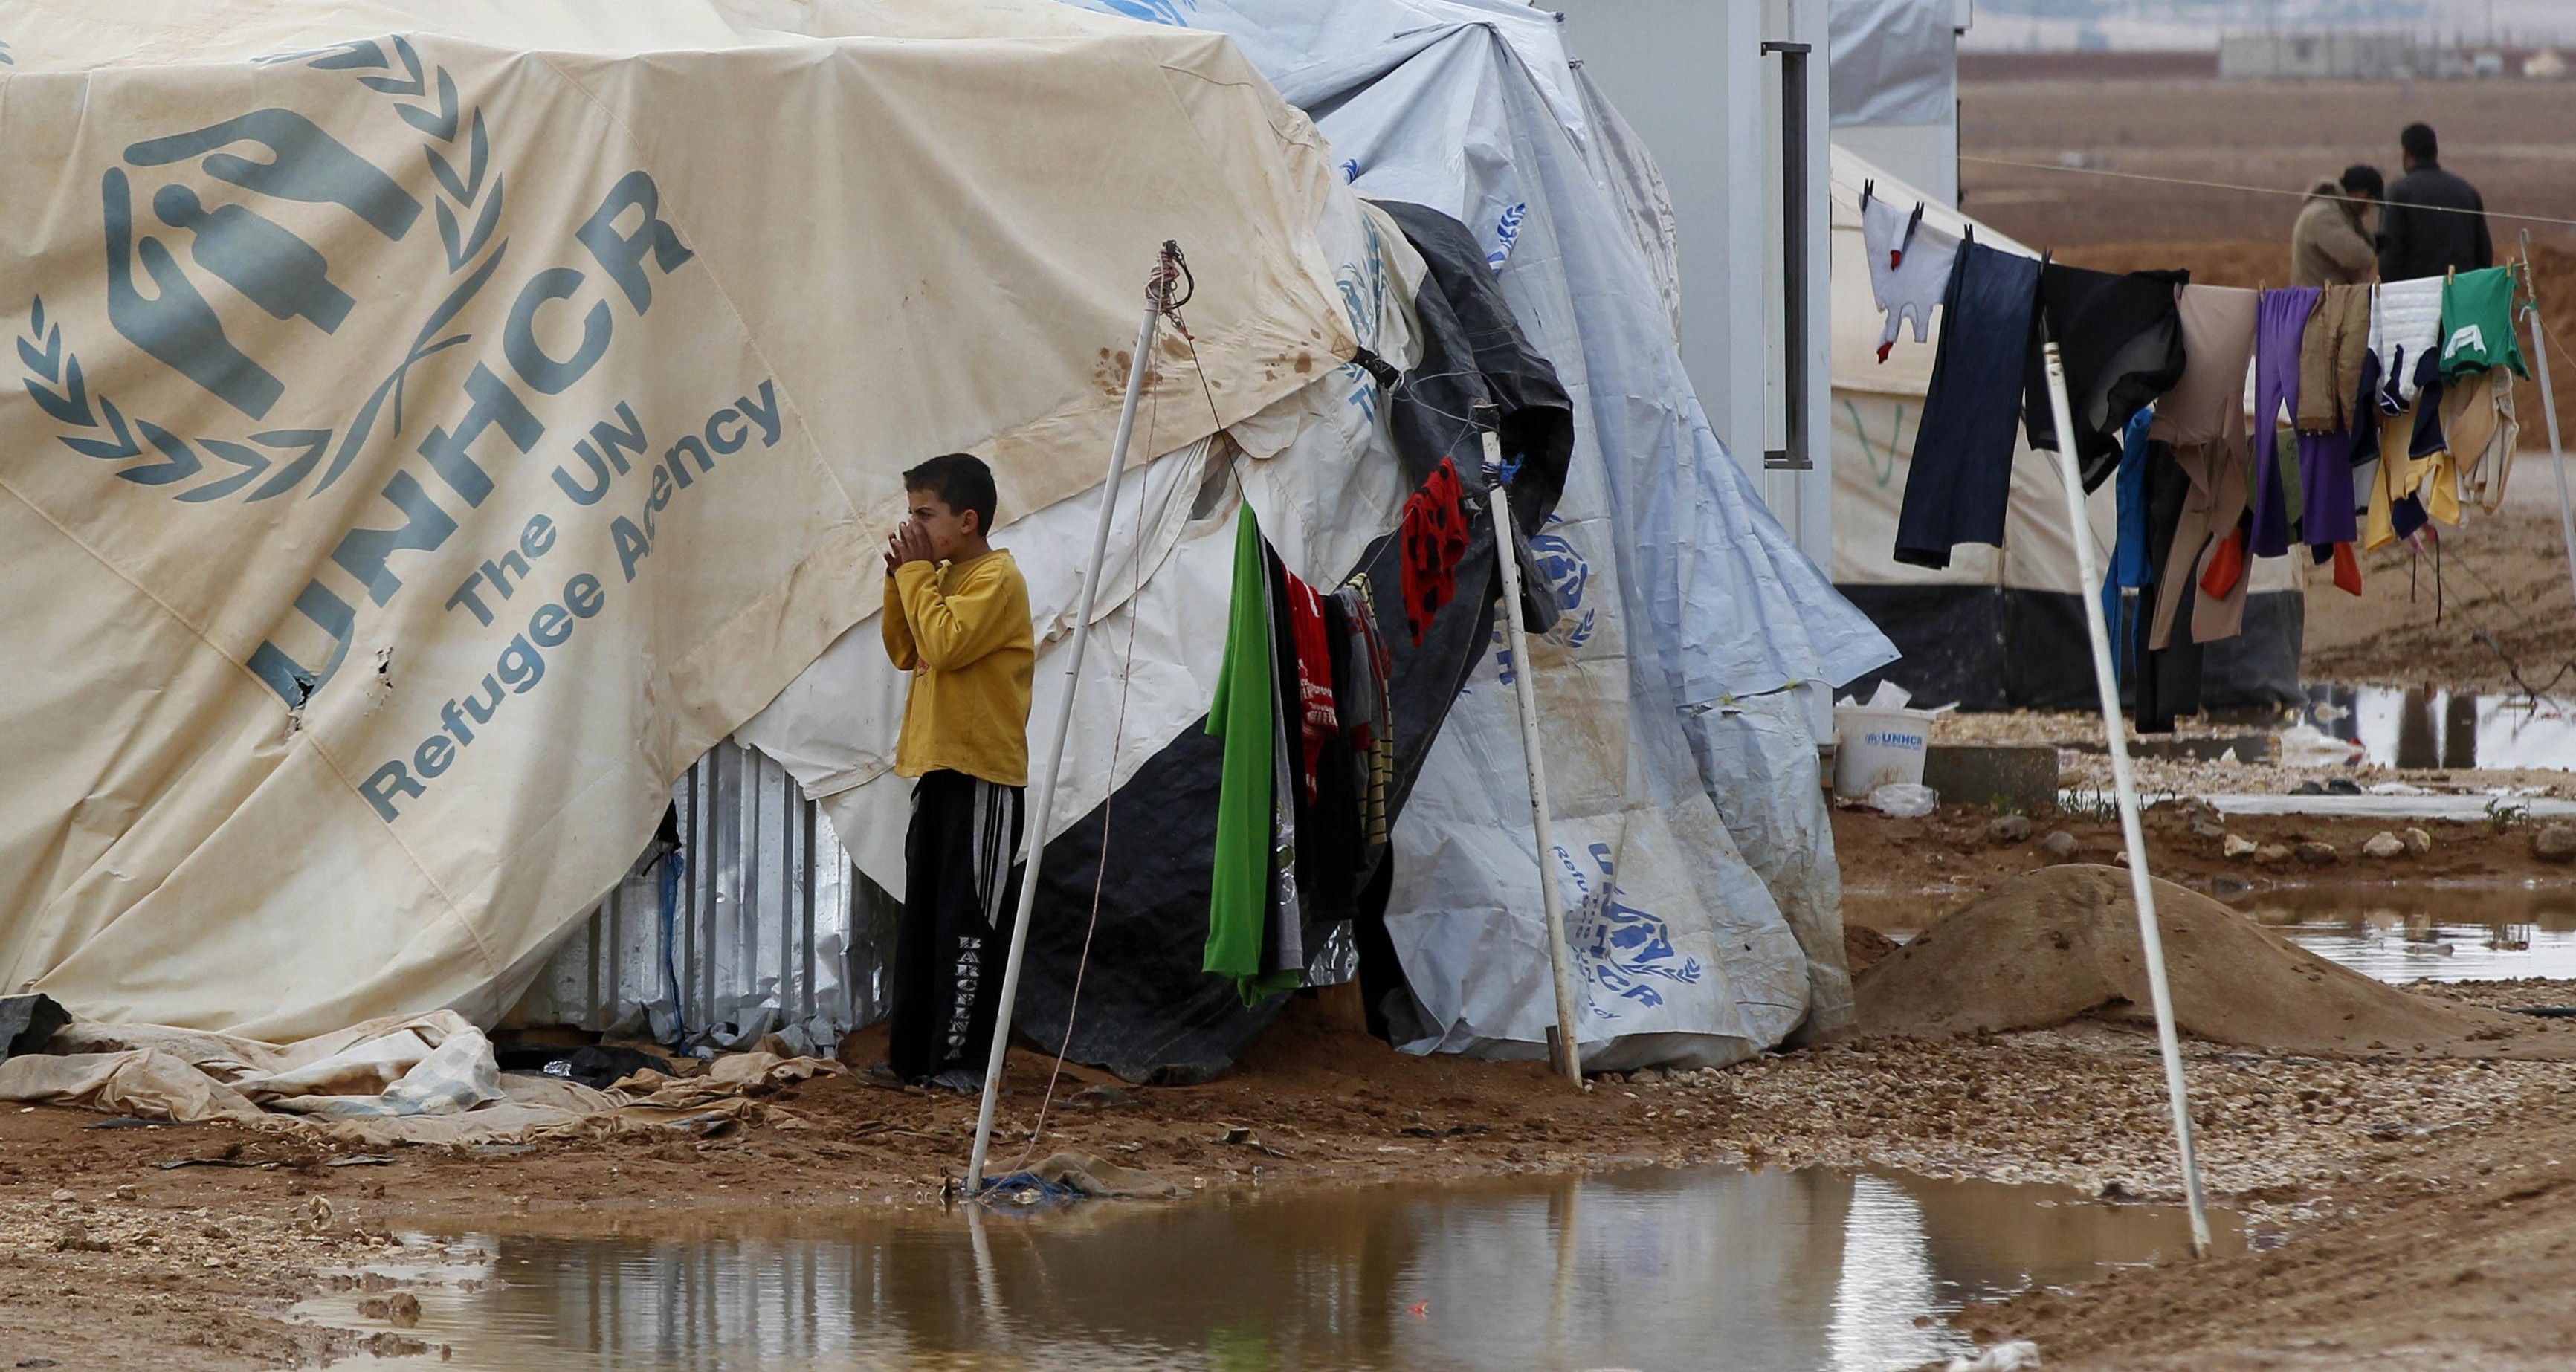 فضيحة تركية: اعتداءات جنسية على 30 صبيا سوريا بمخيم للاجئين